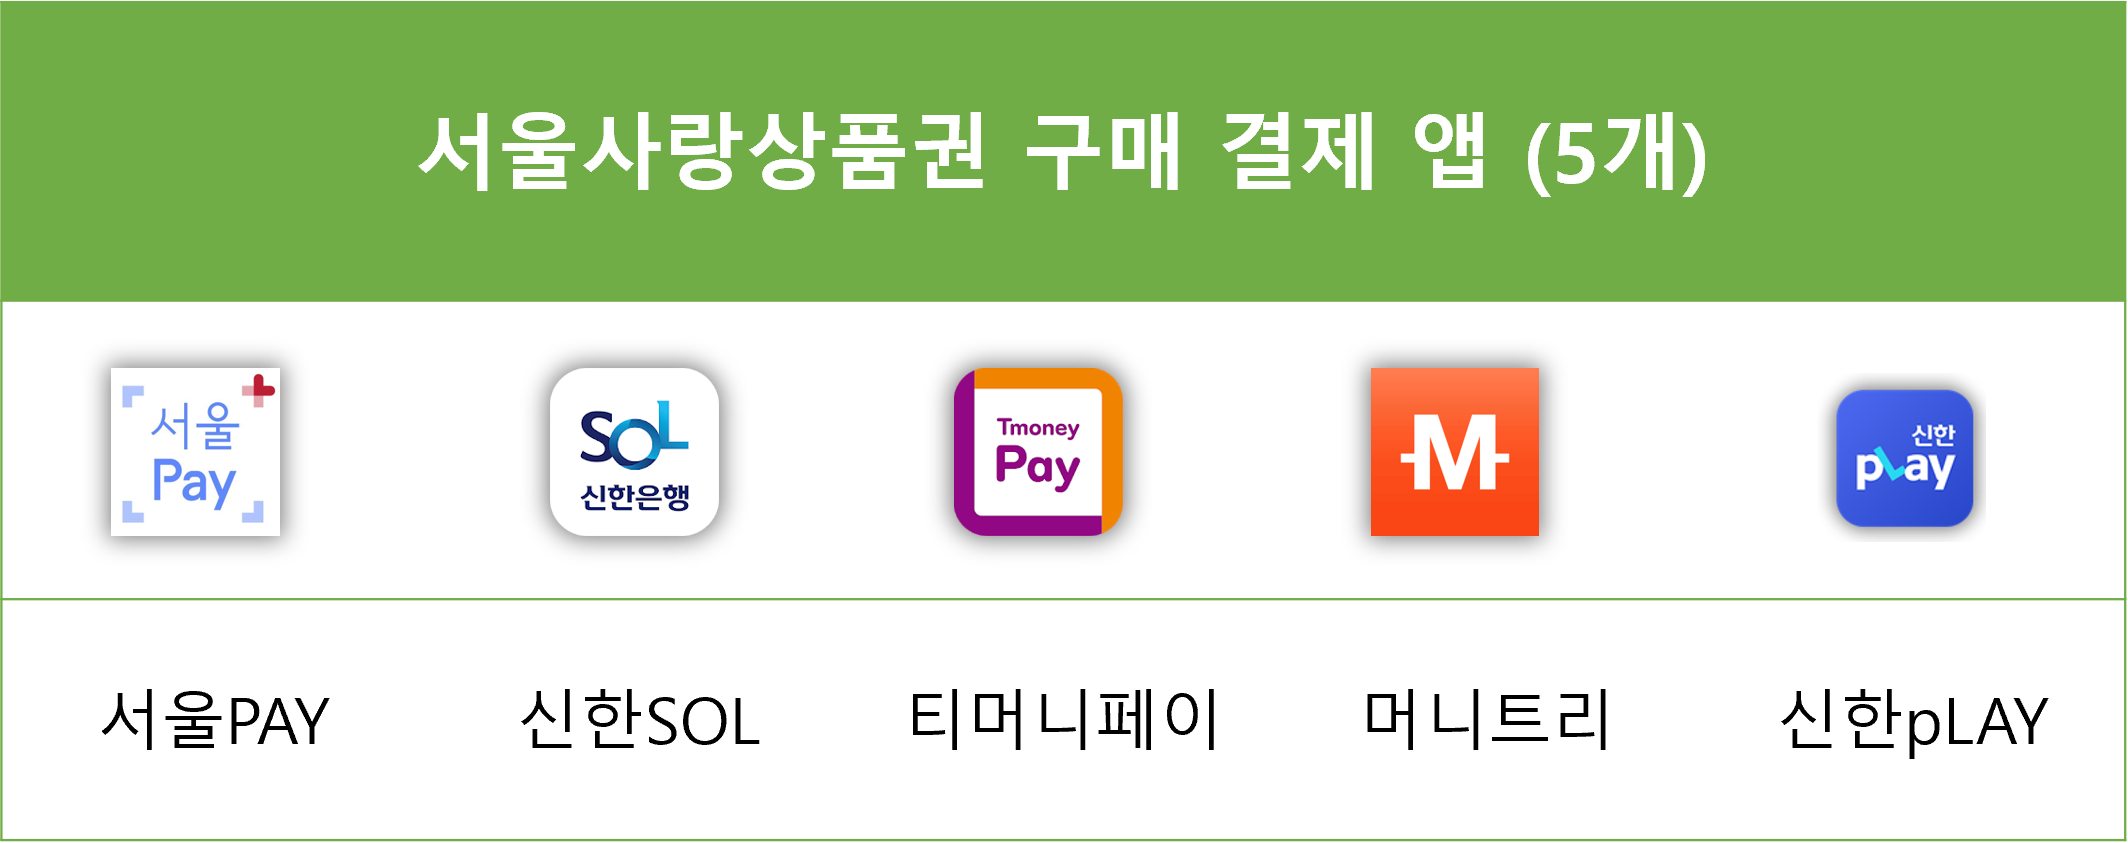 서울사랑상품권 구매 앱 안내표